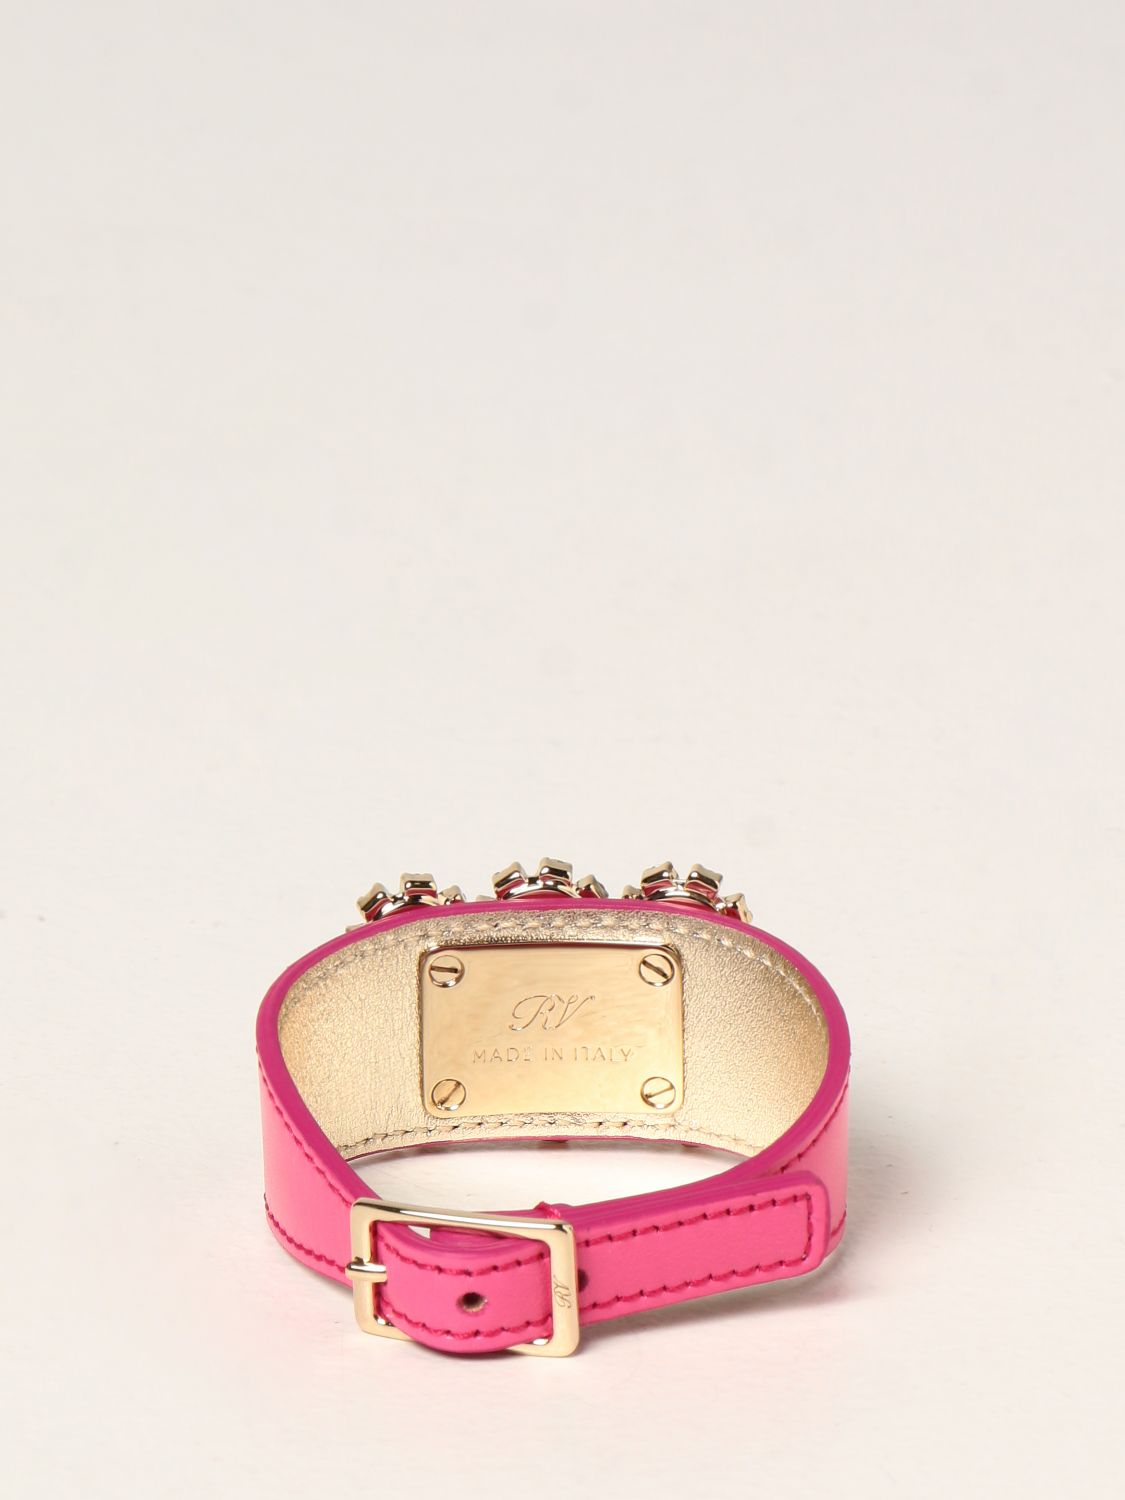 Jewel Roger Vivier: Roger Vivier Flower Strass leather bracelet pink 2